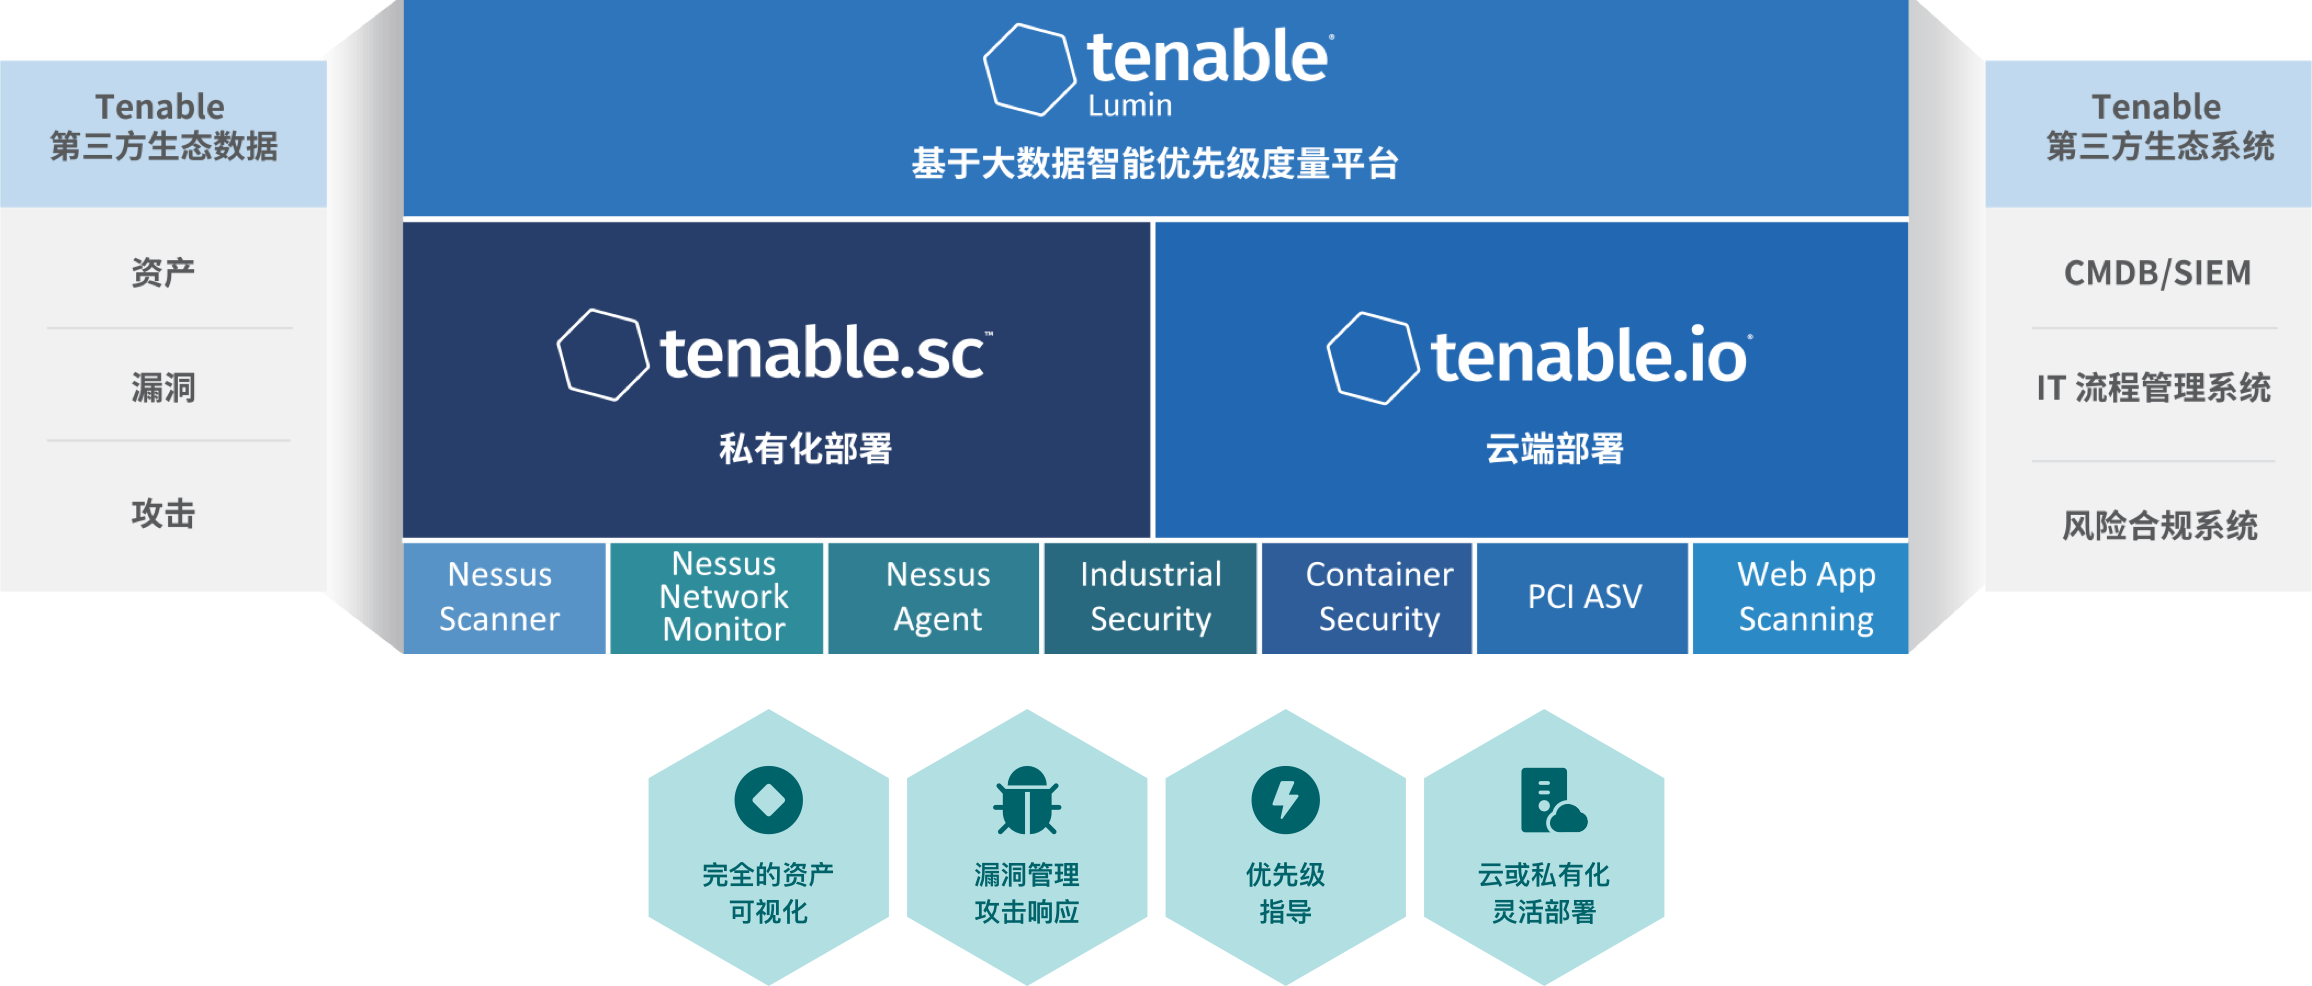 苏州华克斯信息科技有限公司取得Tenable授权代理商资质